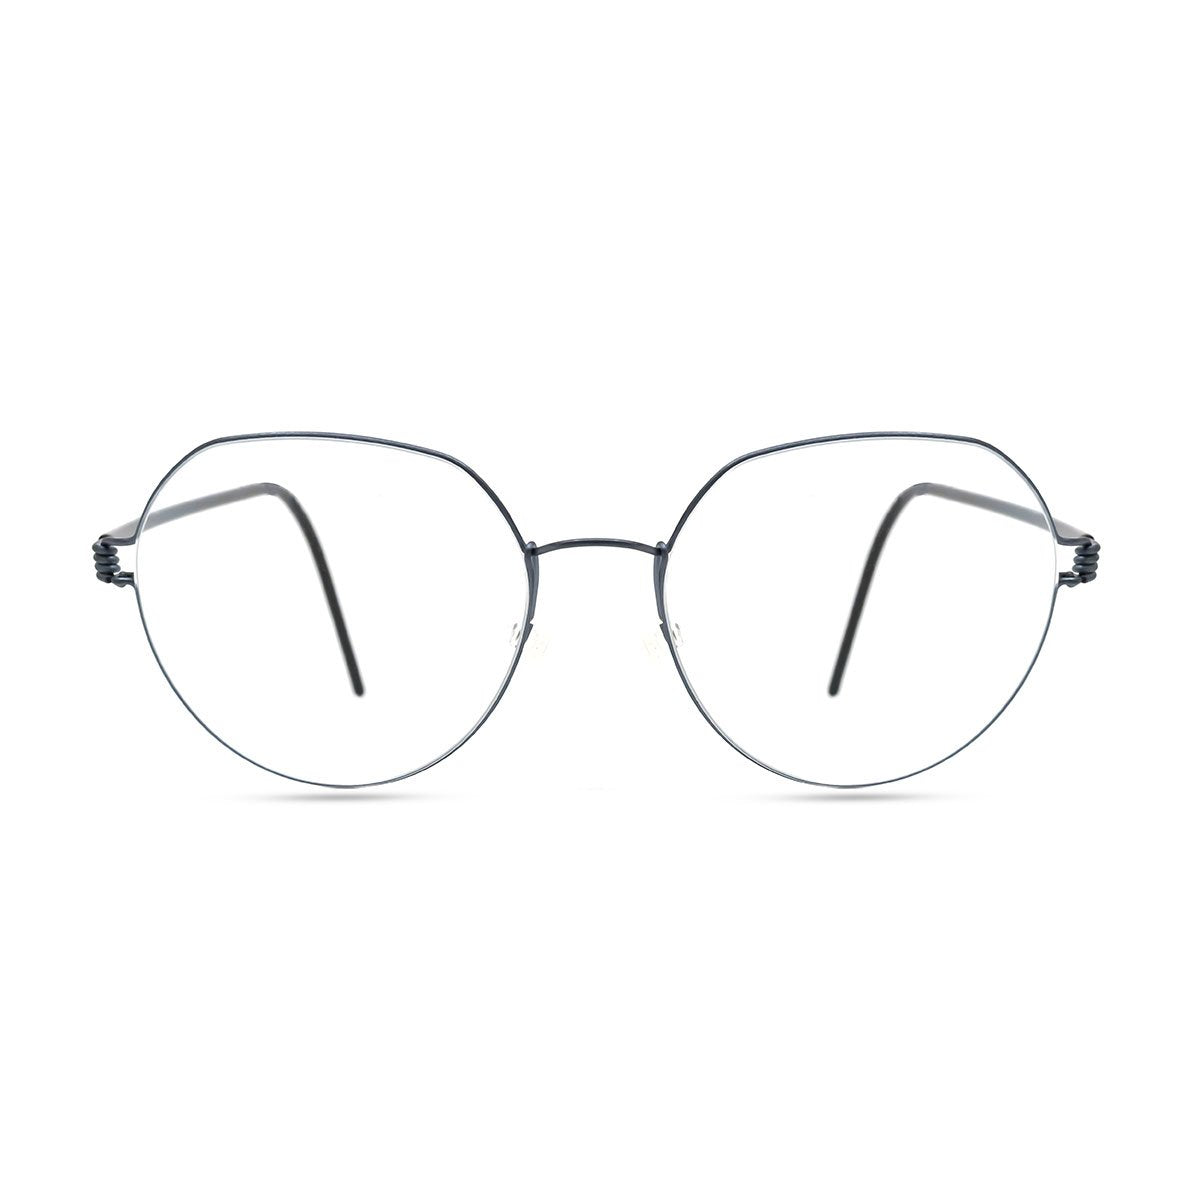 Giorgio Armani's Perfect Wire-Rimmed Glasses - The New York Times